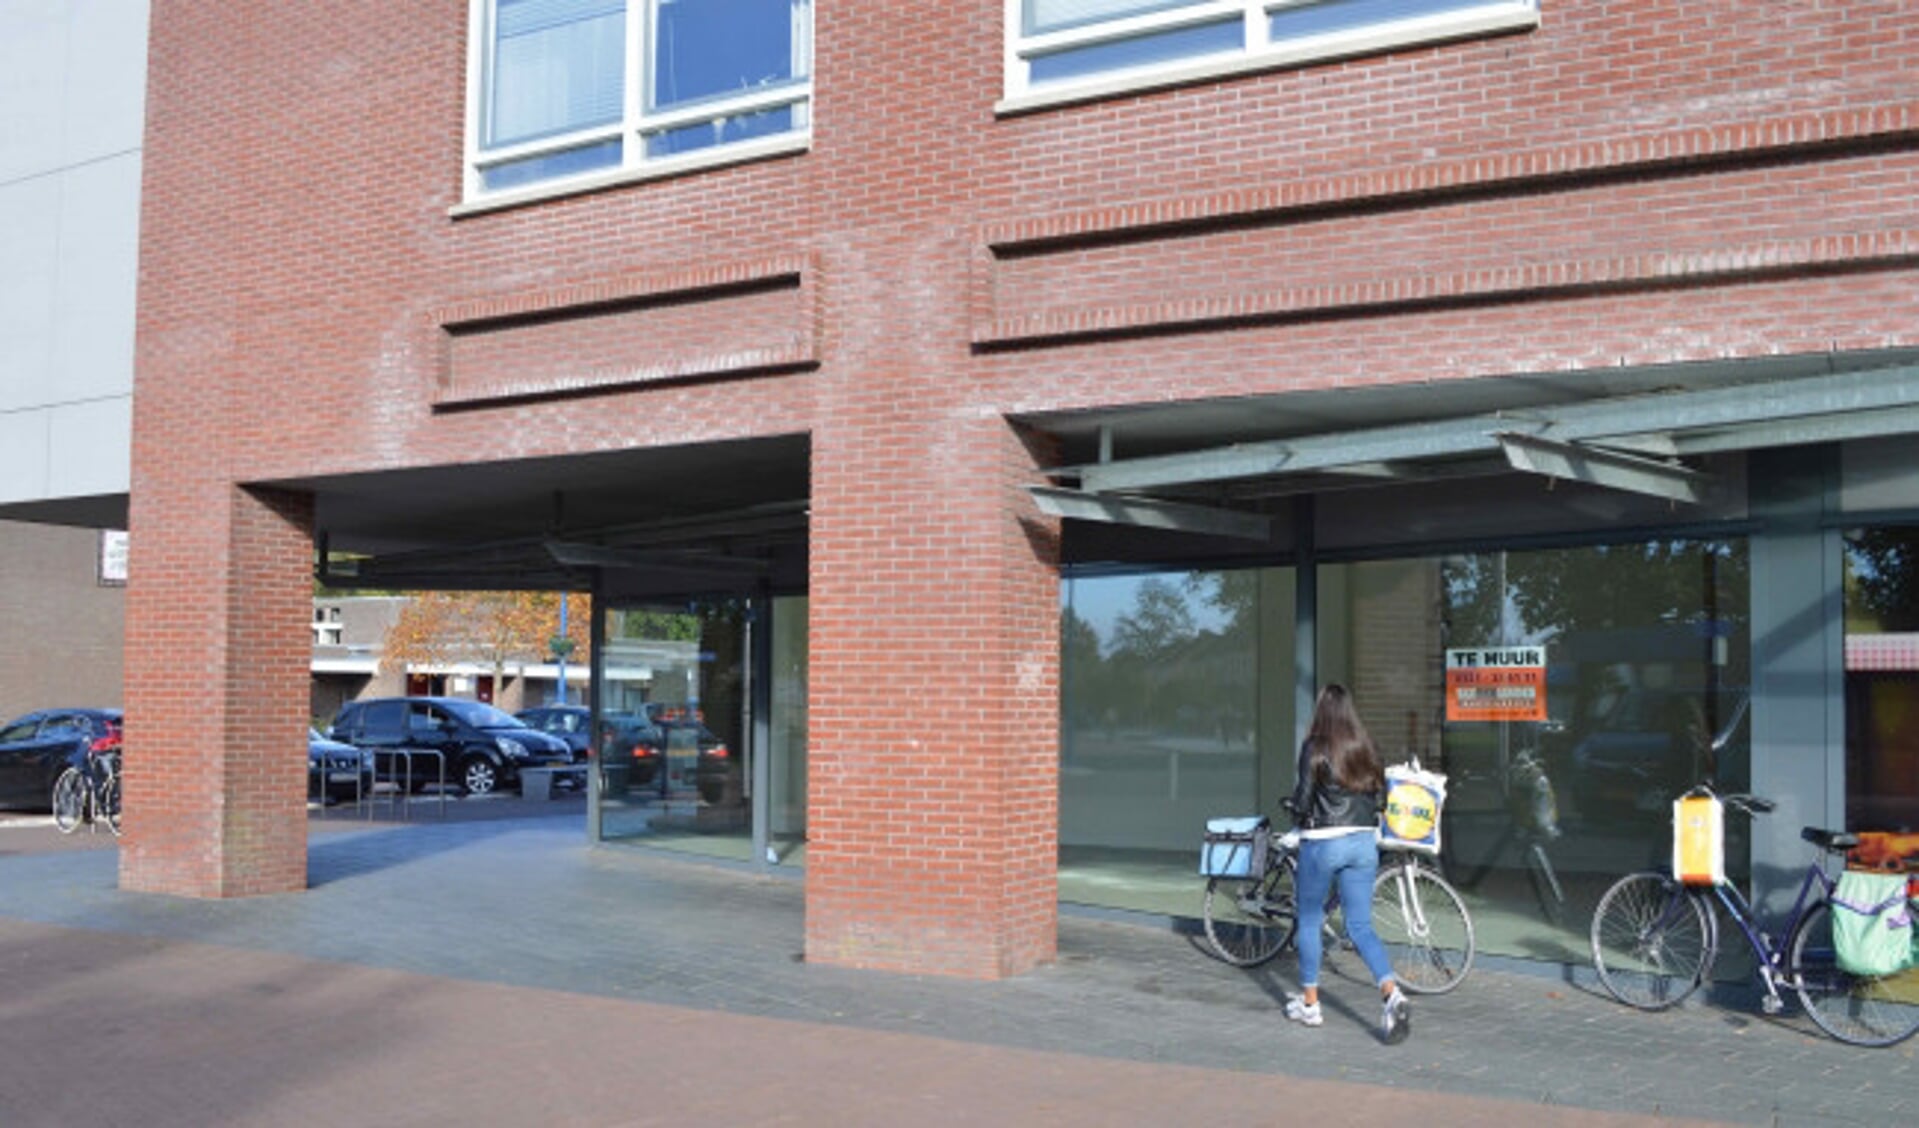  Winkelcentrum Swifterbant